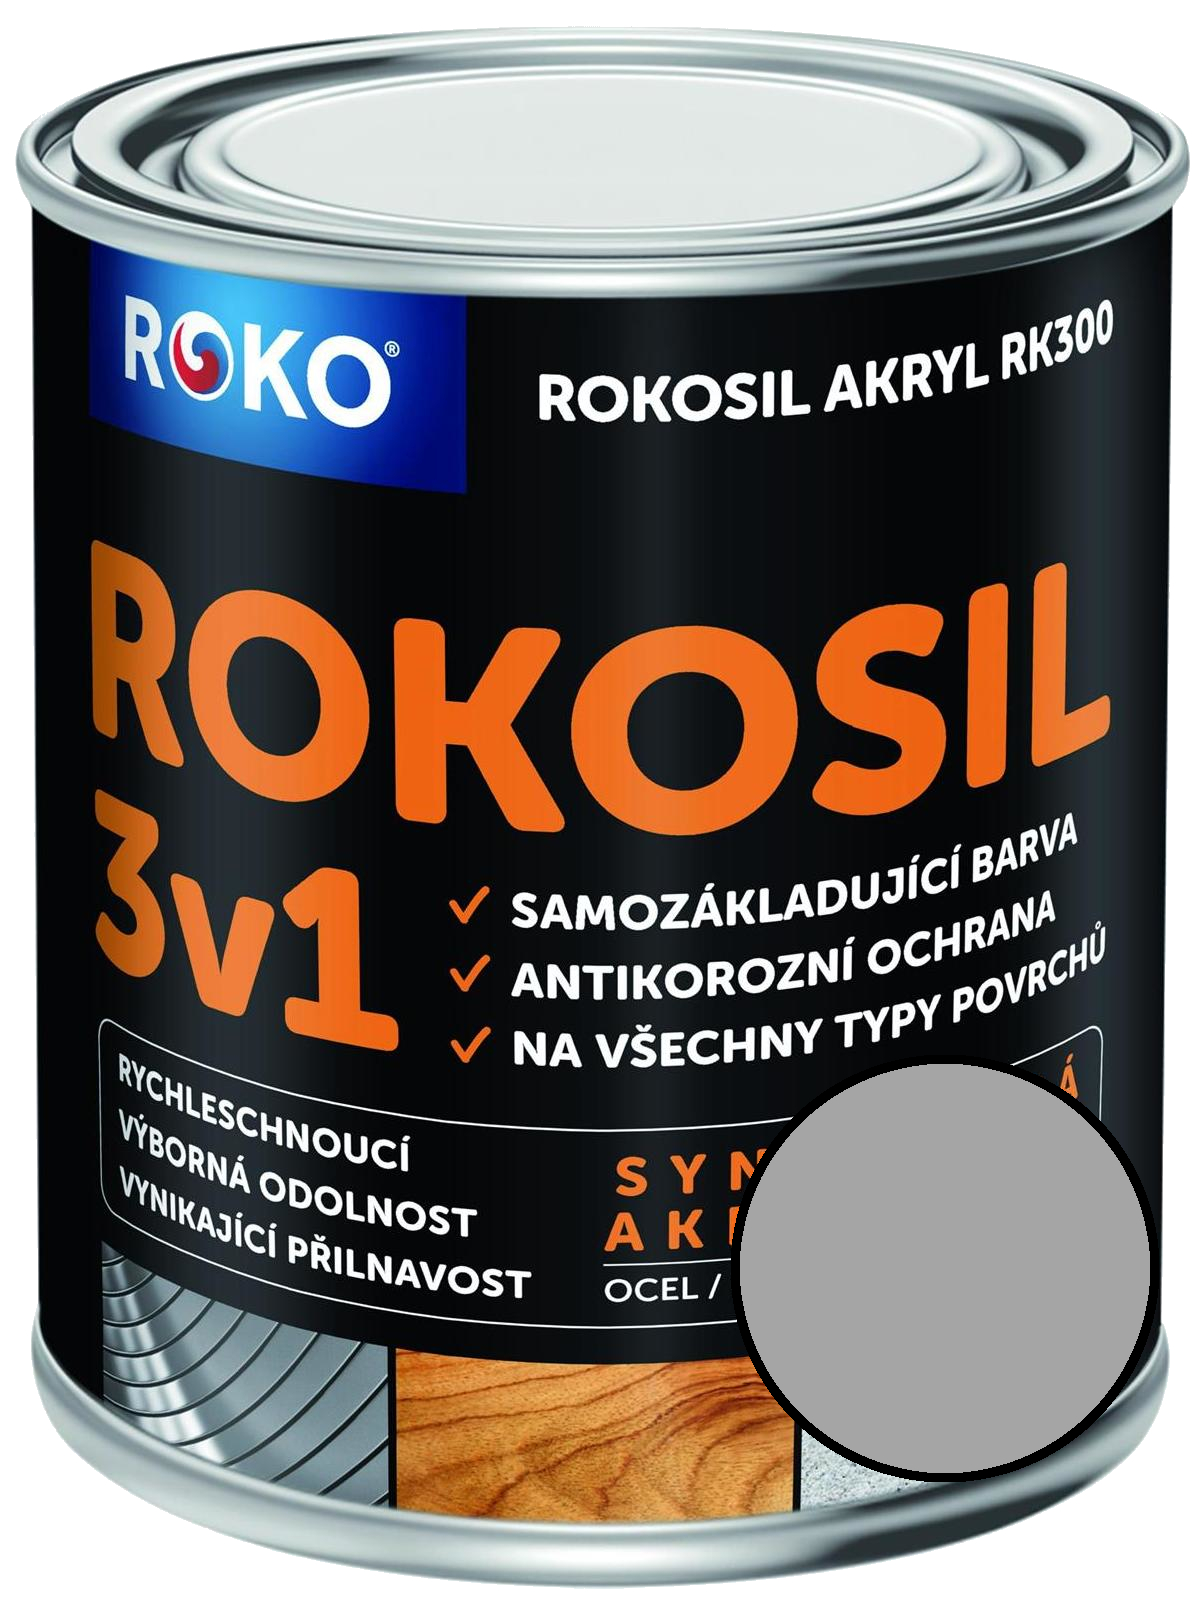 Barva samozákladující Rokosil akryl 3v1 RK 300 9110 stříbrná, 3 l